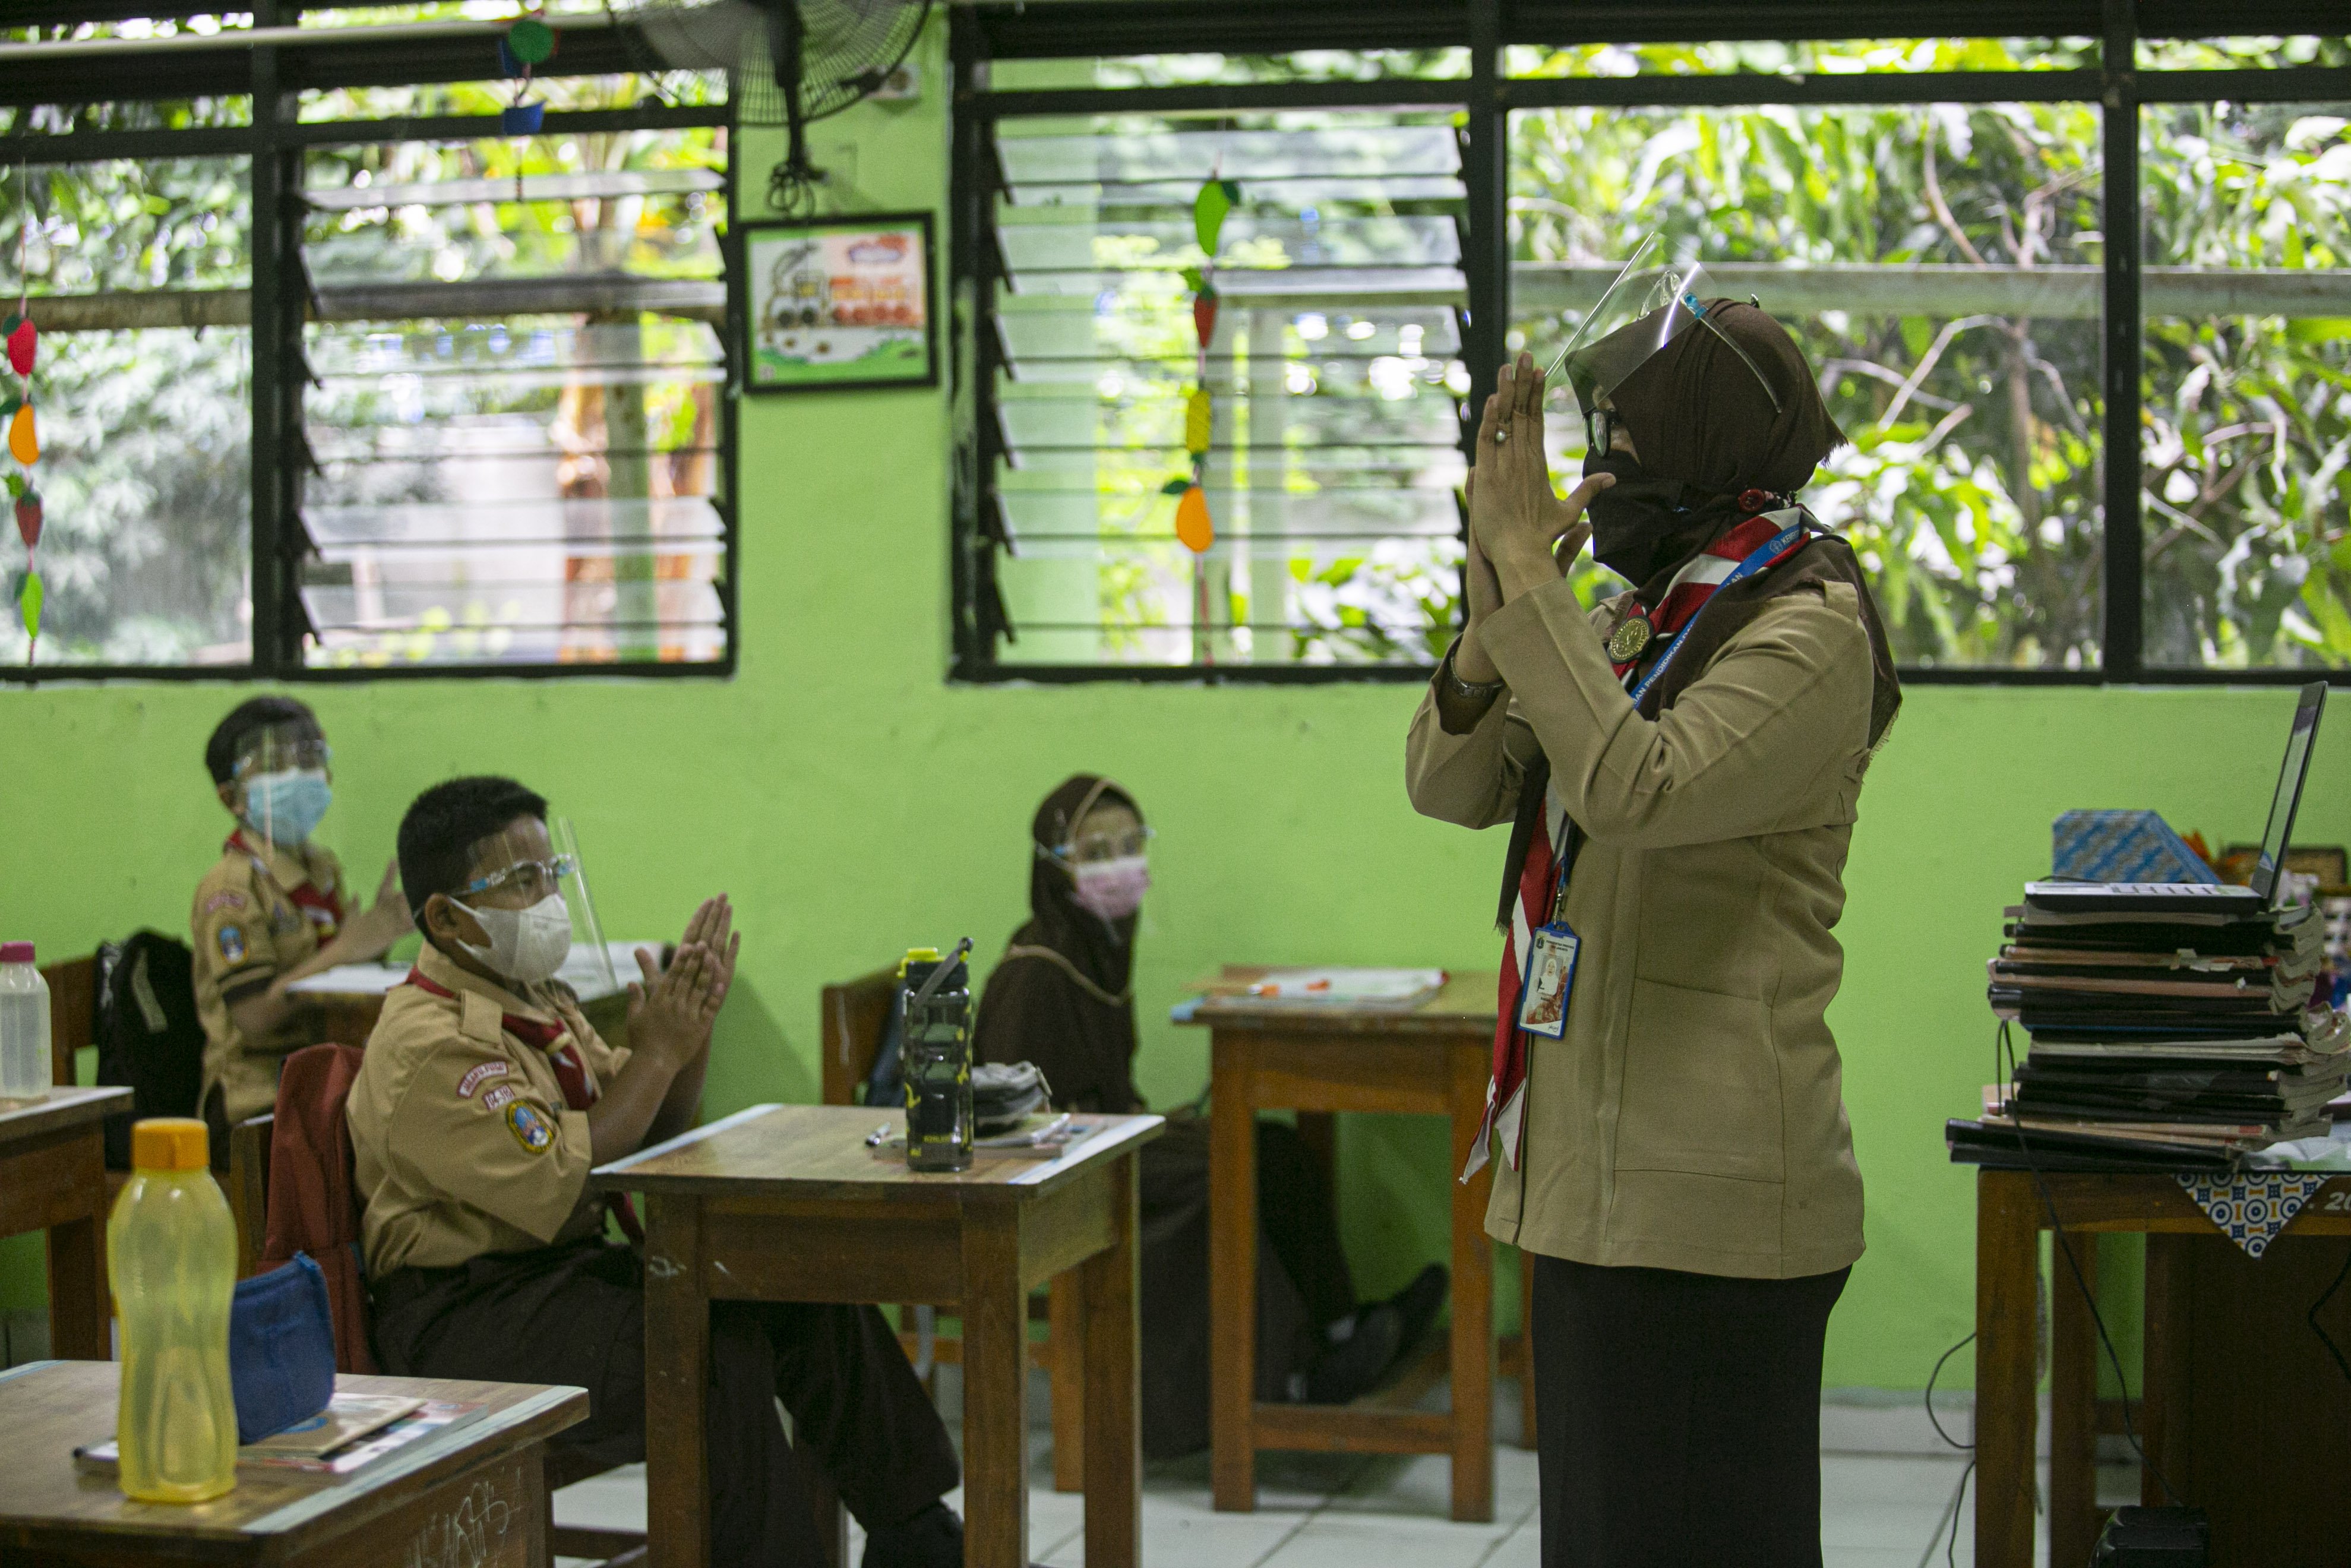 Sejumlah siswa mengikuti uji coba pembelajaran tatap muka di SDN Kenari 08 pagi, Jakarta, Rabu (7/4/2021). Pemerintah Provinsi DKI akan melakukan uji coba pembelajaran tatap muka terbatas di 85 sekolah mulai 7 April hingga 29 April 2021 dengan menerapkan protokol kesehatan Covid-19 yang ketat. Skema yang akan diterapkan adalah pembelajaran tatap muka secara bergantian di dalam ruangan maksimum 50 persen dari kapasitas ruangan.